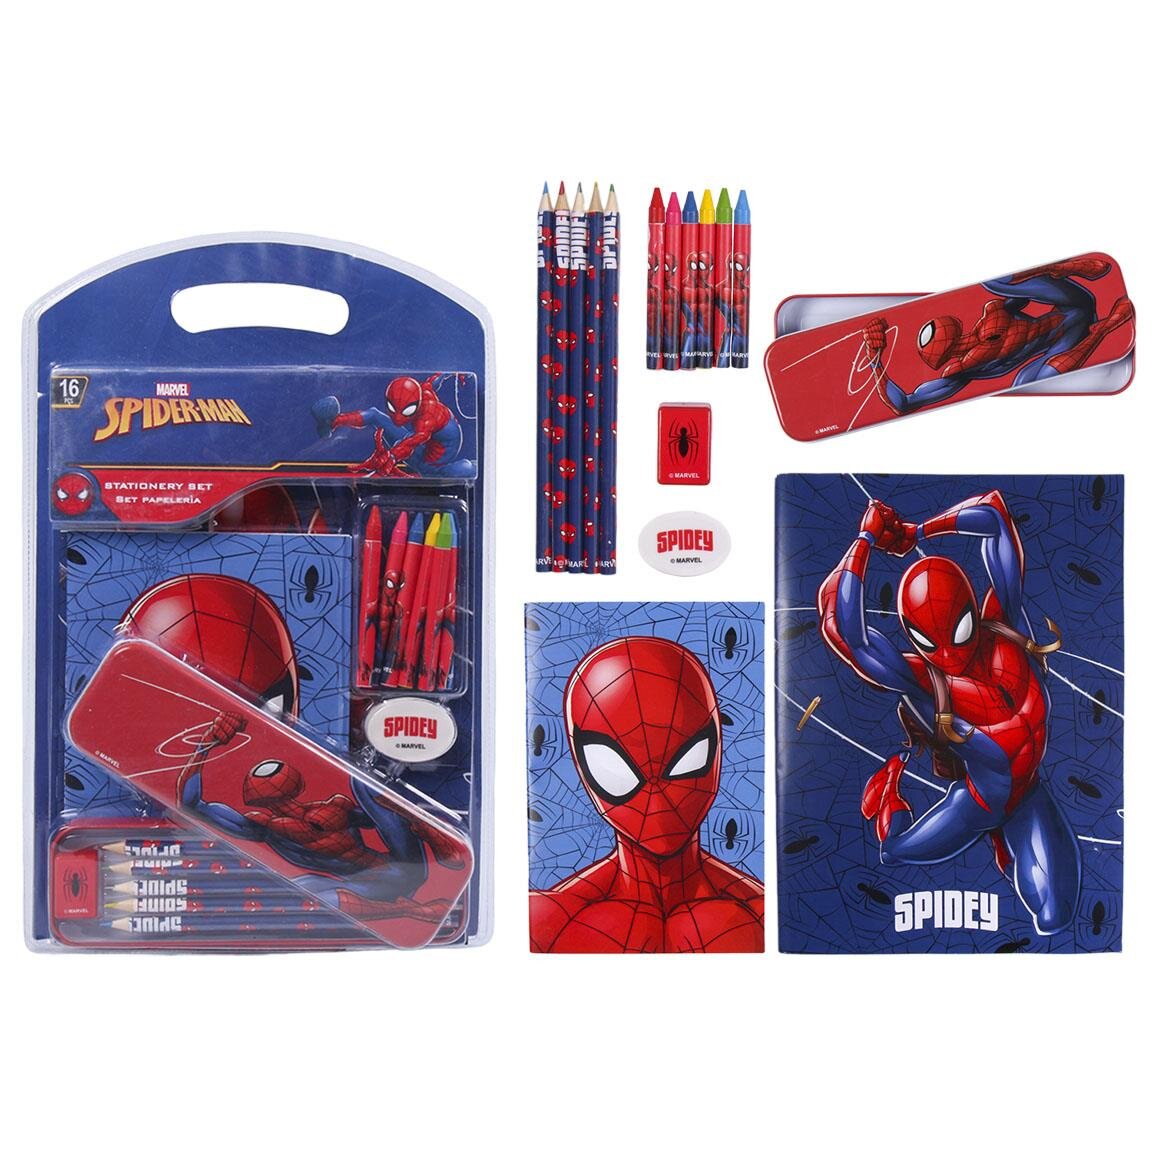 Spiderman - Zeichenset 16er Pack